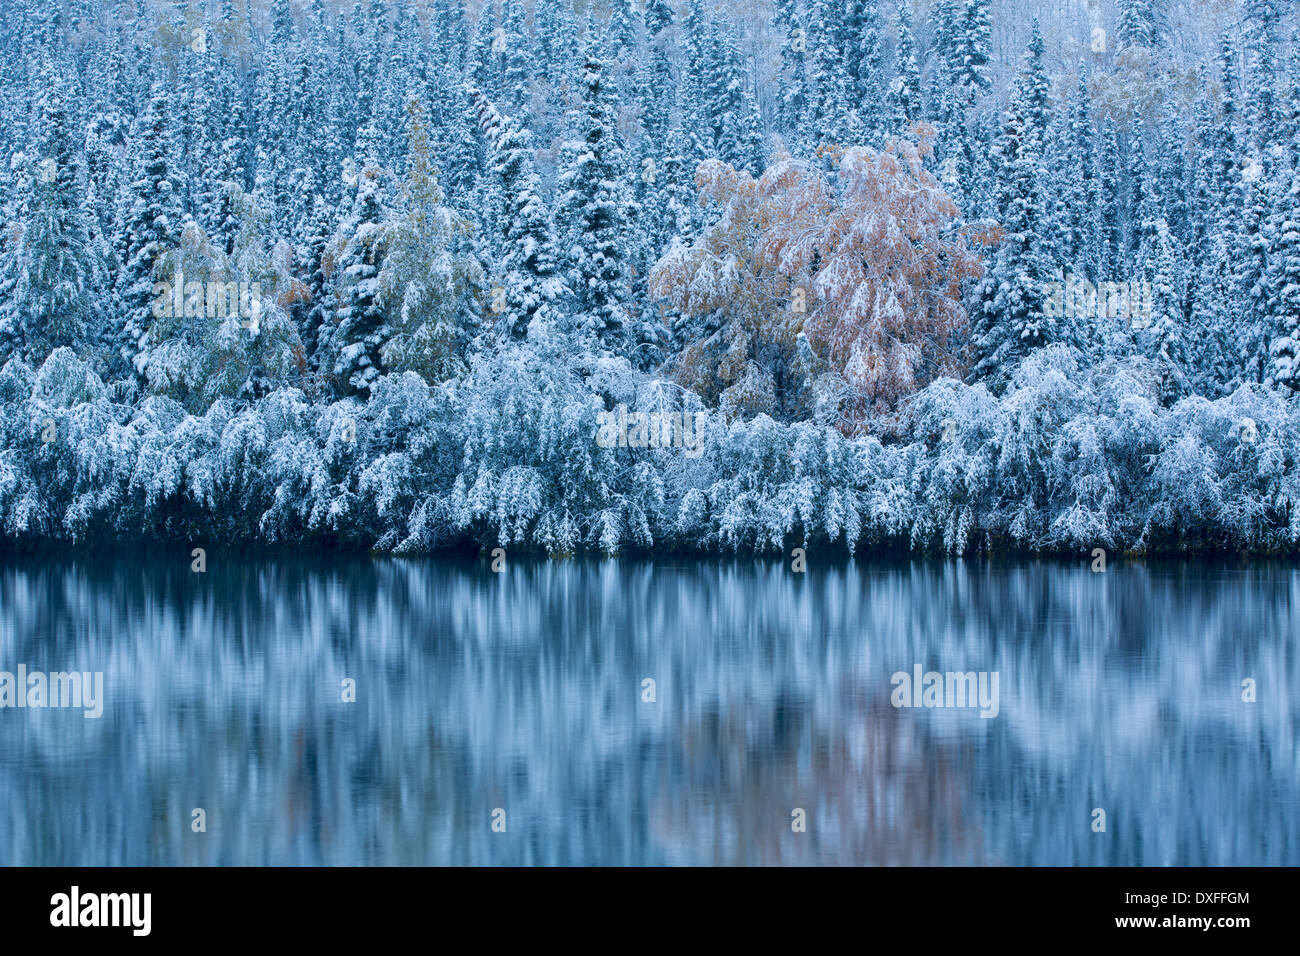 Prima neve e colori autunnali a cinque miglia di lago, sulla pista di argento nr Mayo, Yukon Territori, Canada Foto Stock